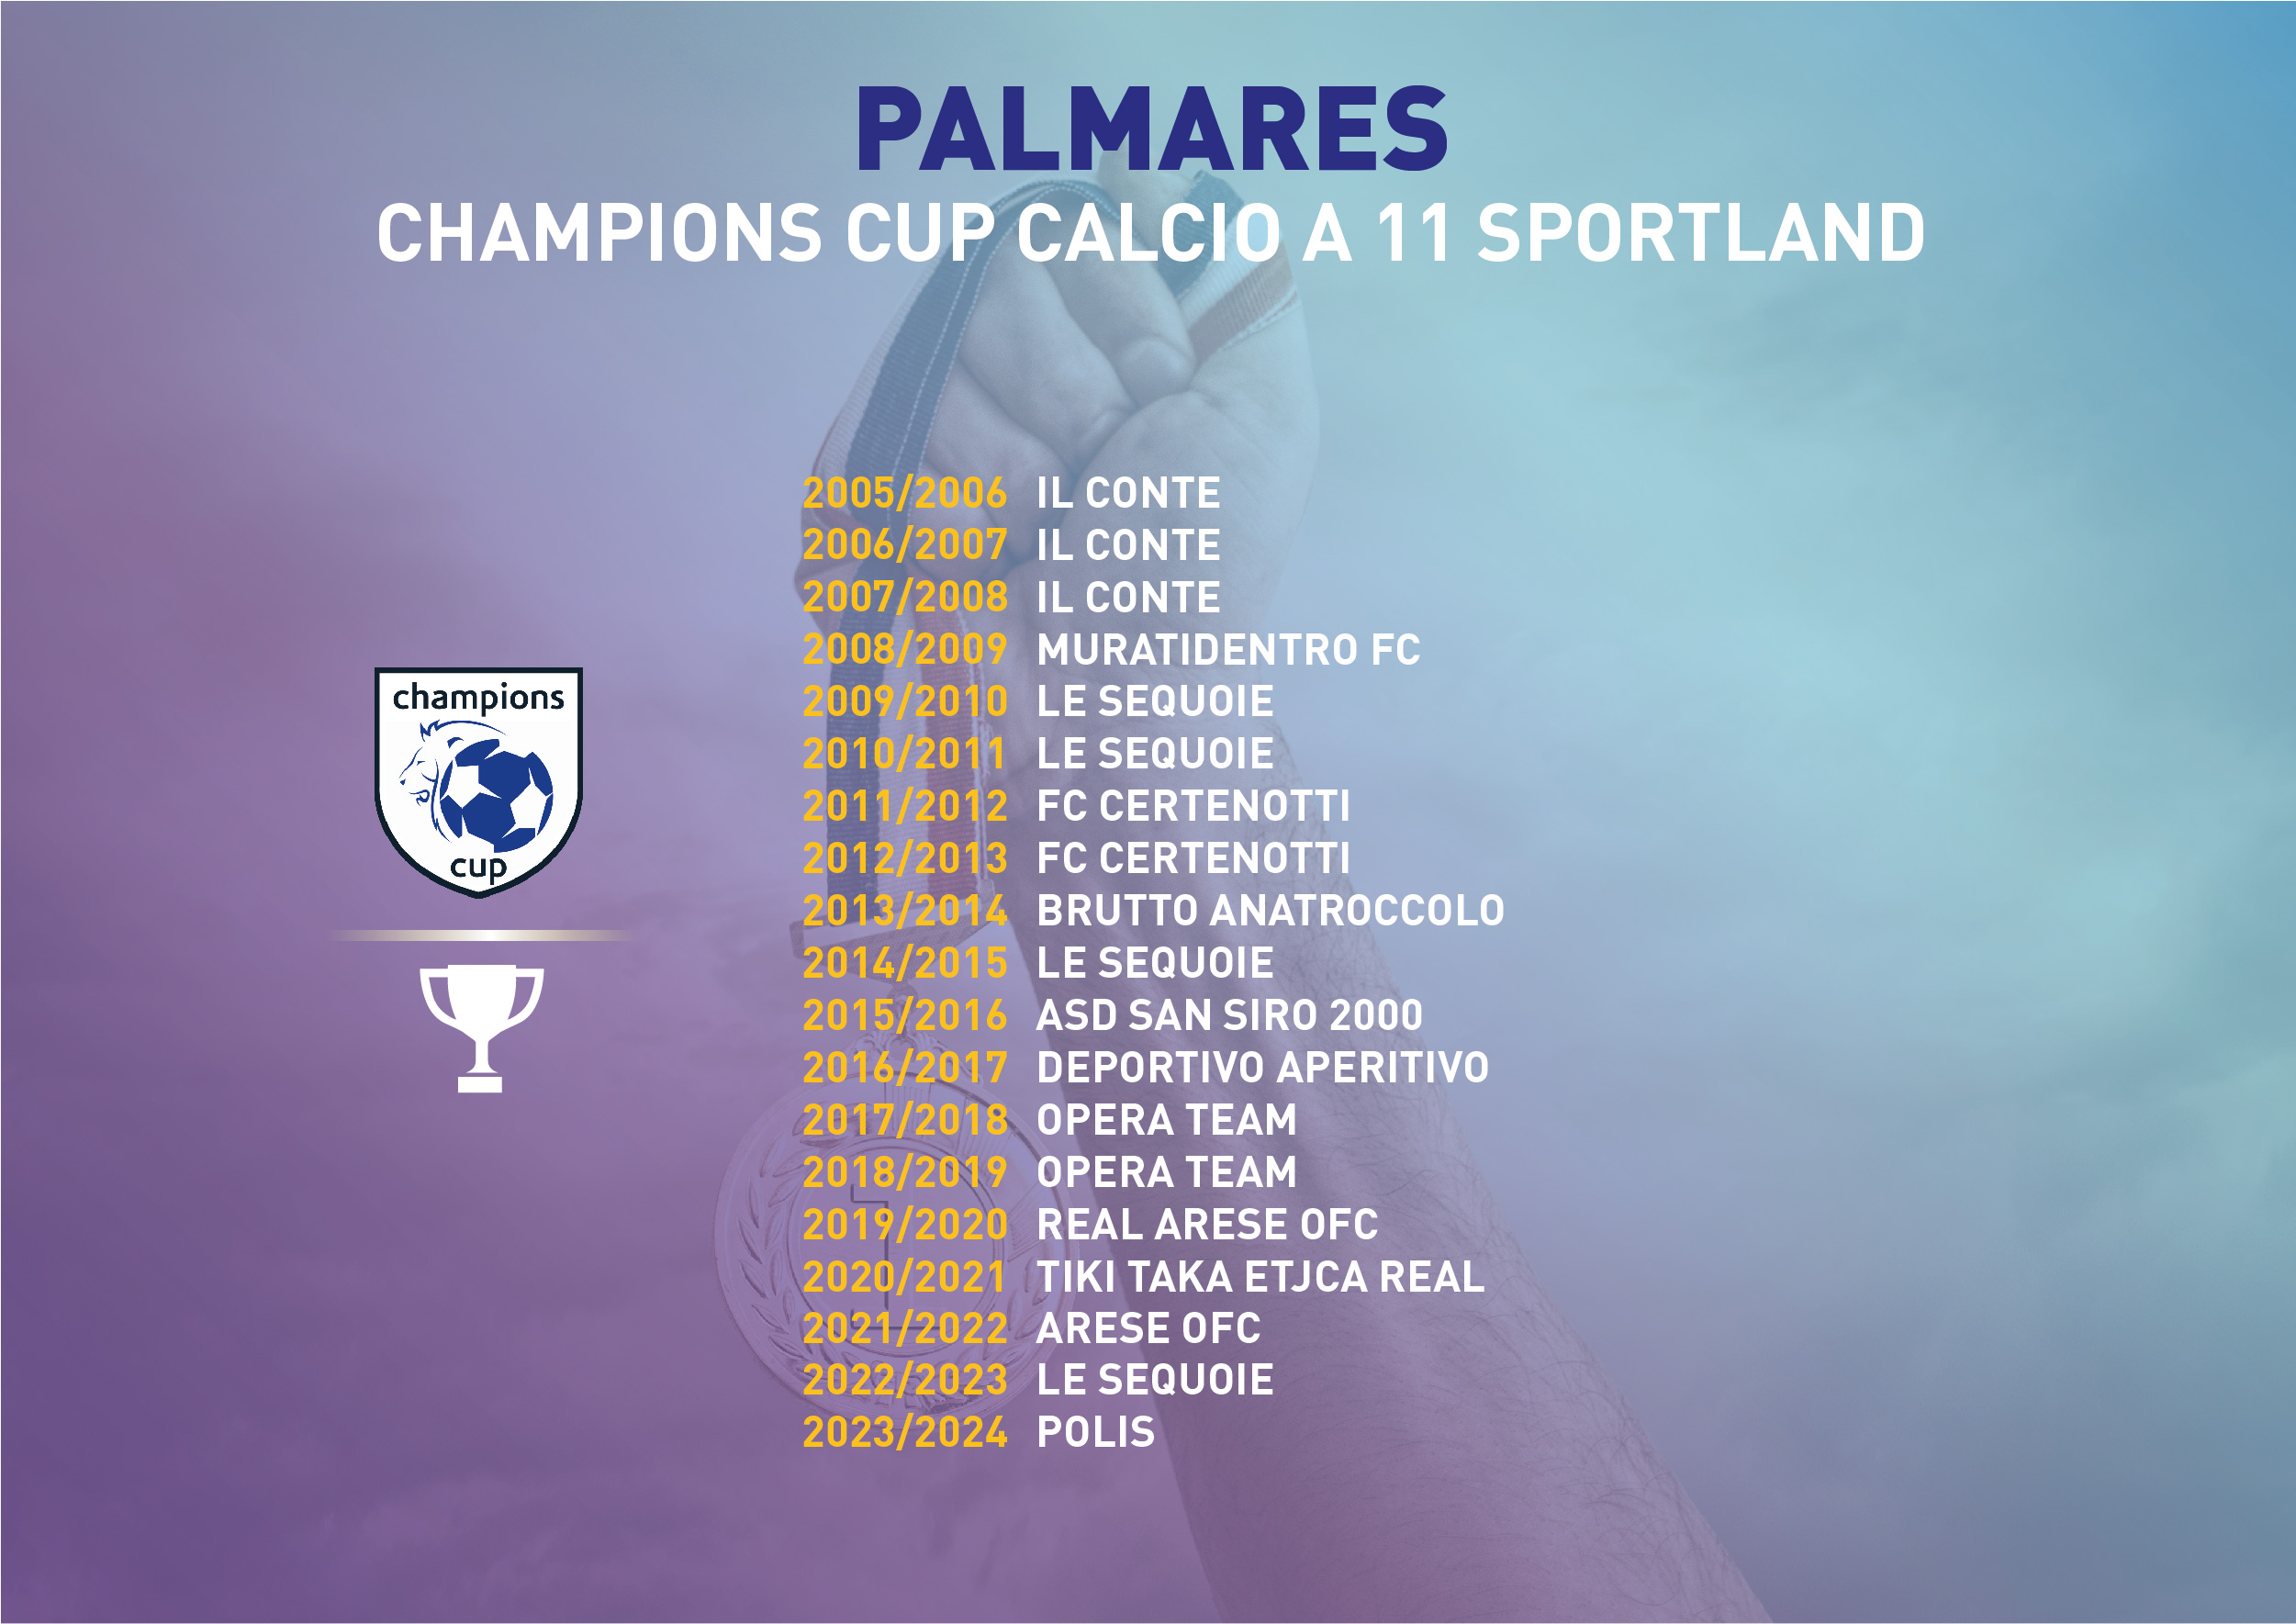 champions cup torneo calcio a 11 sportland milano